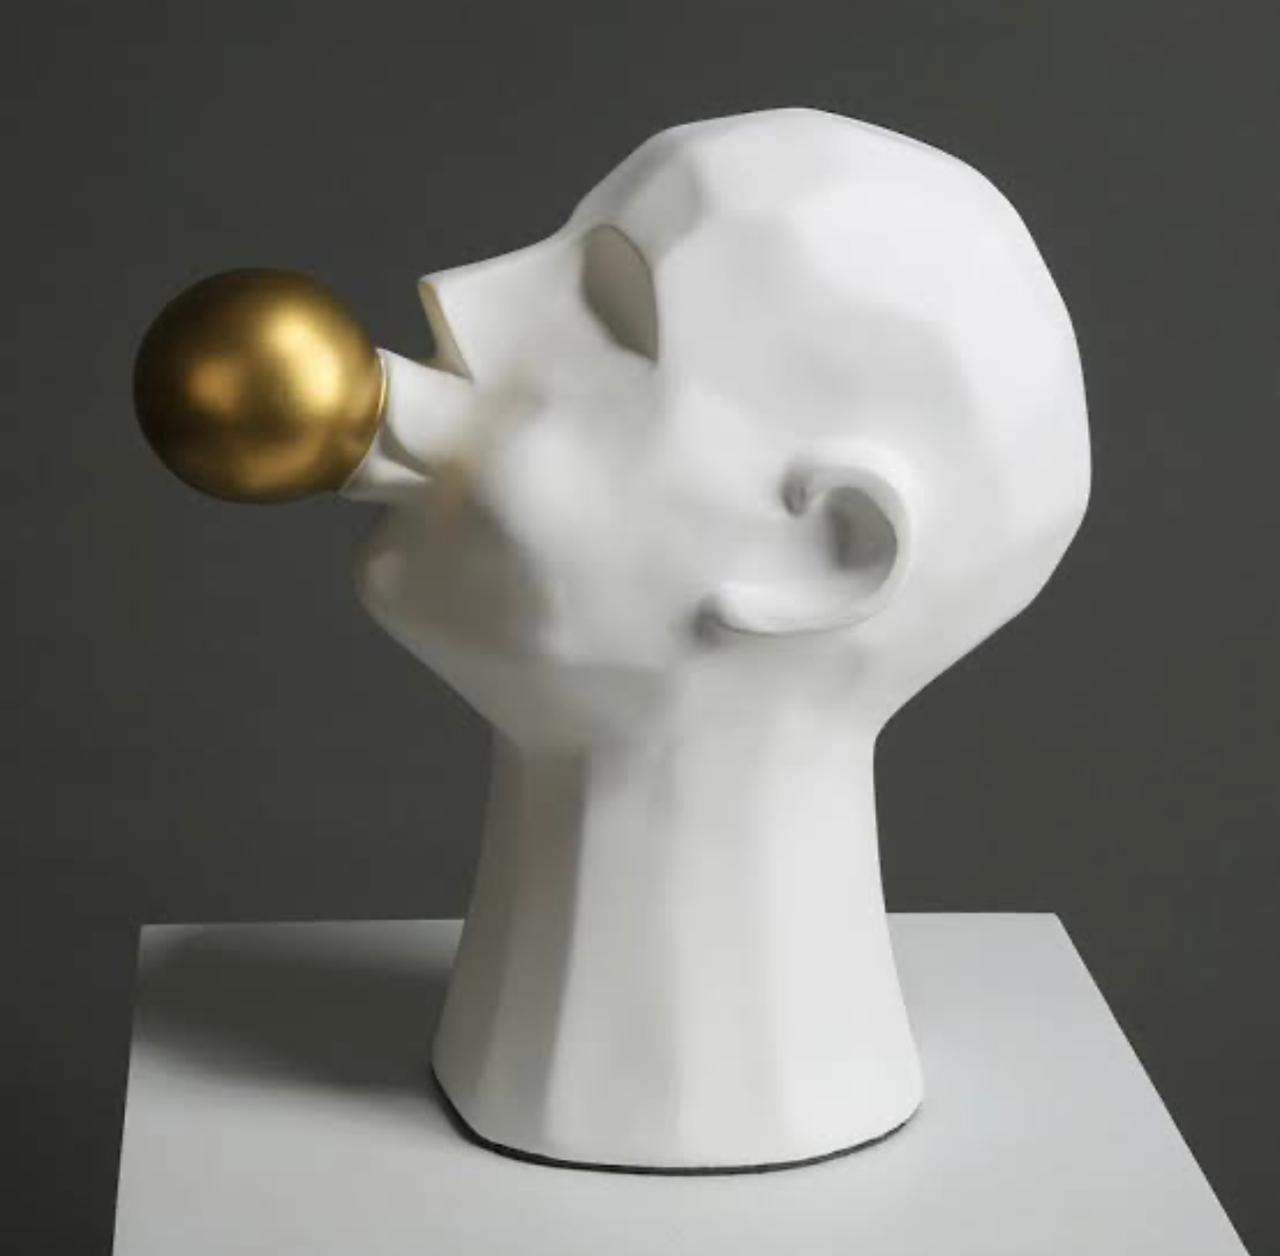 Human Sculpture Blowing Horn